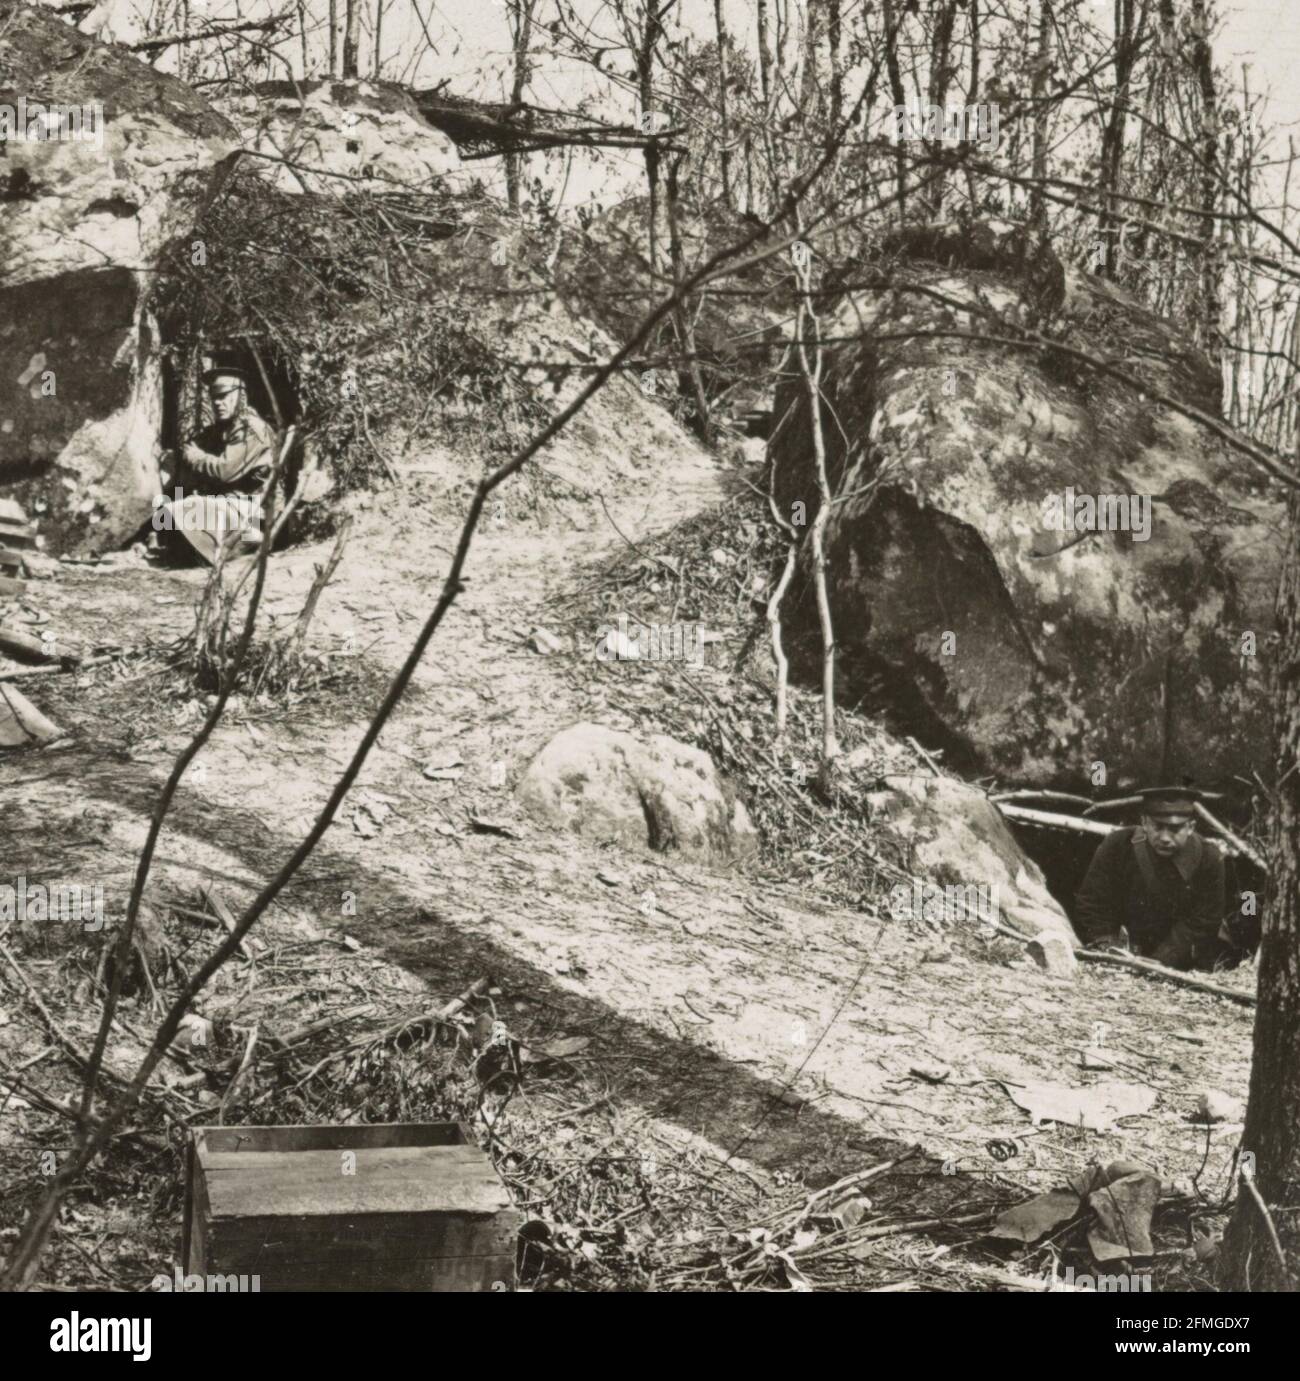 Forti dugate in buchi sotto enormi rocce, a Belleau Woods, Francia durante la prima guerra mondiale Foto Stock